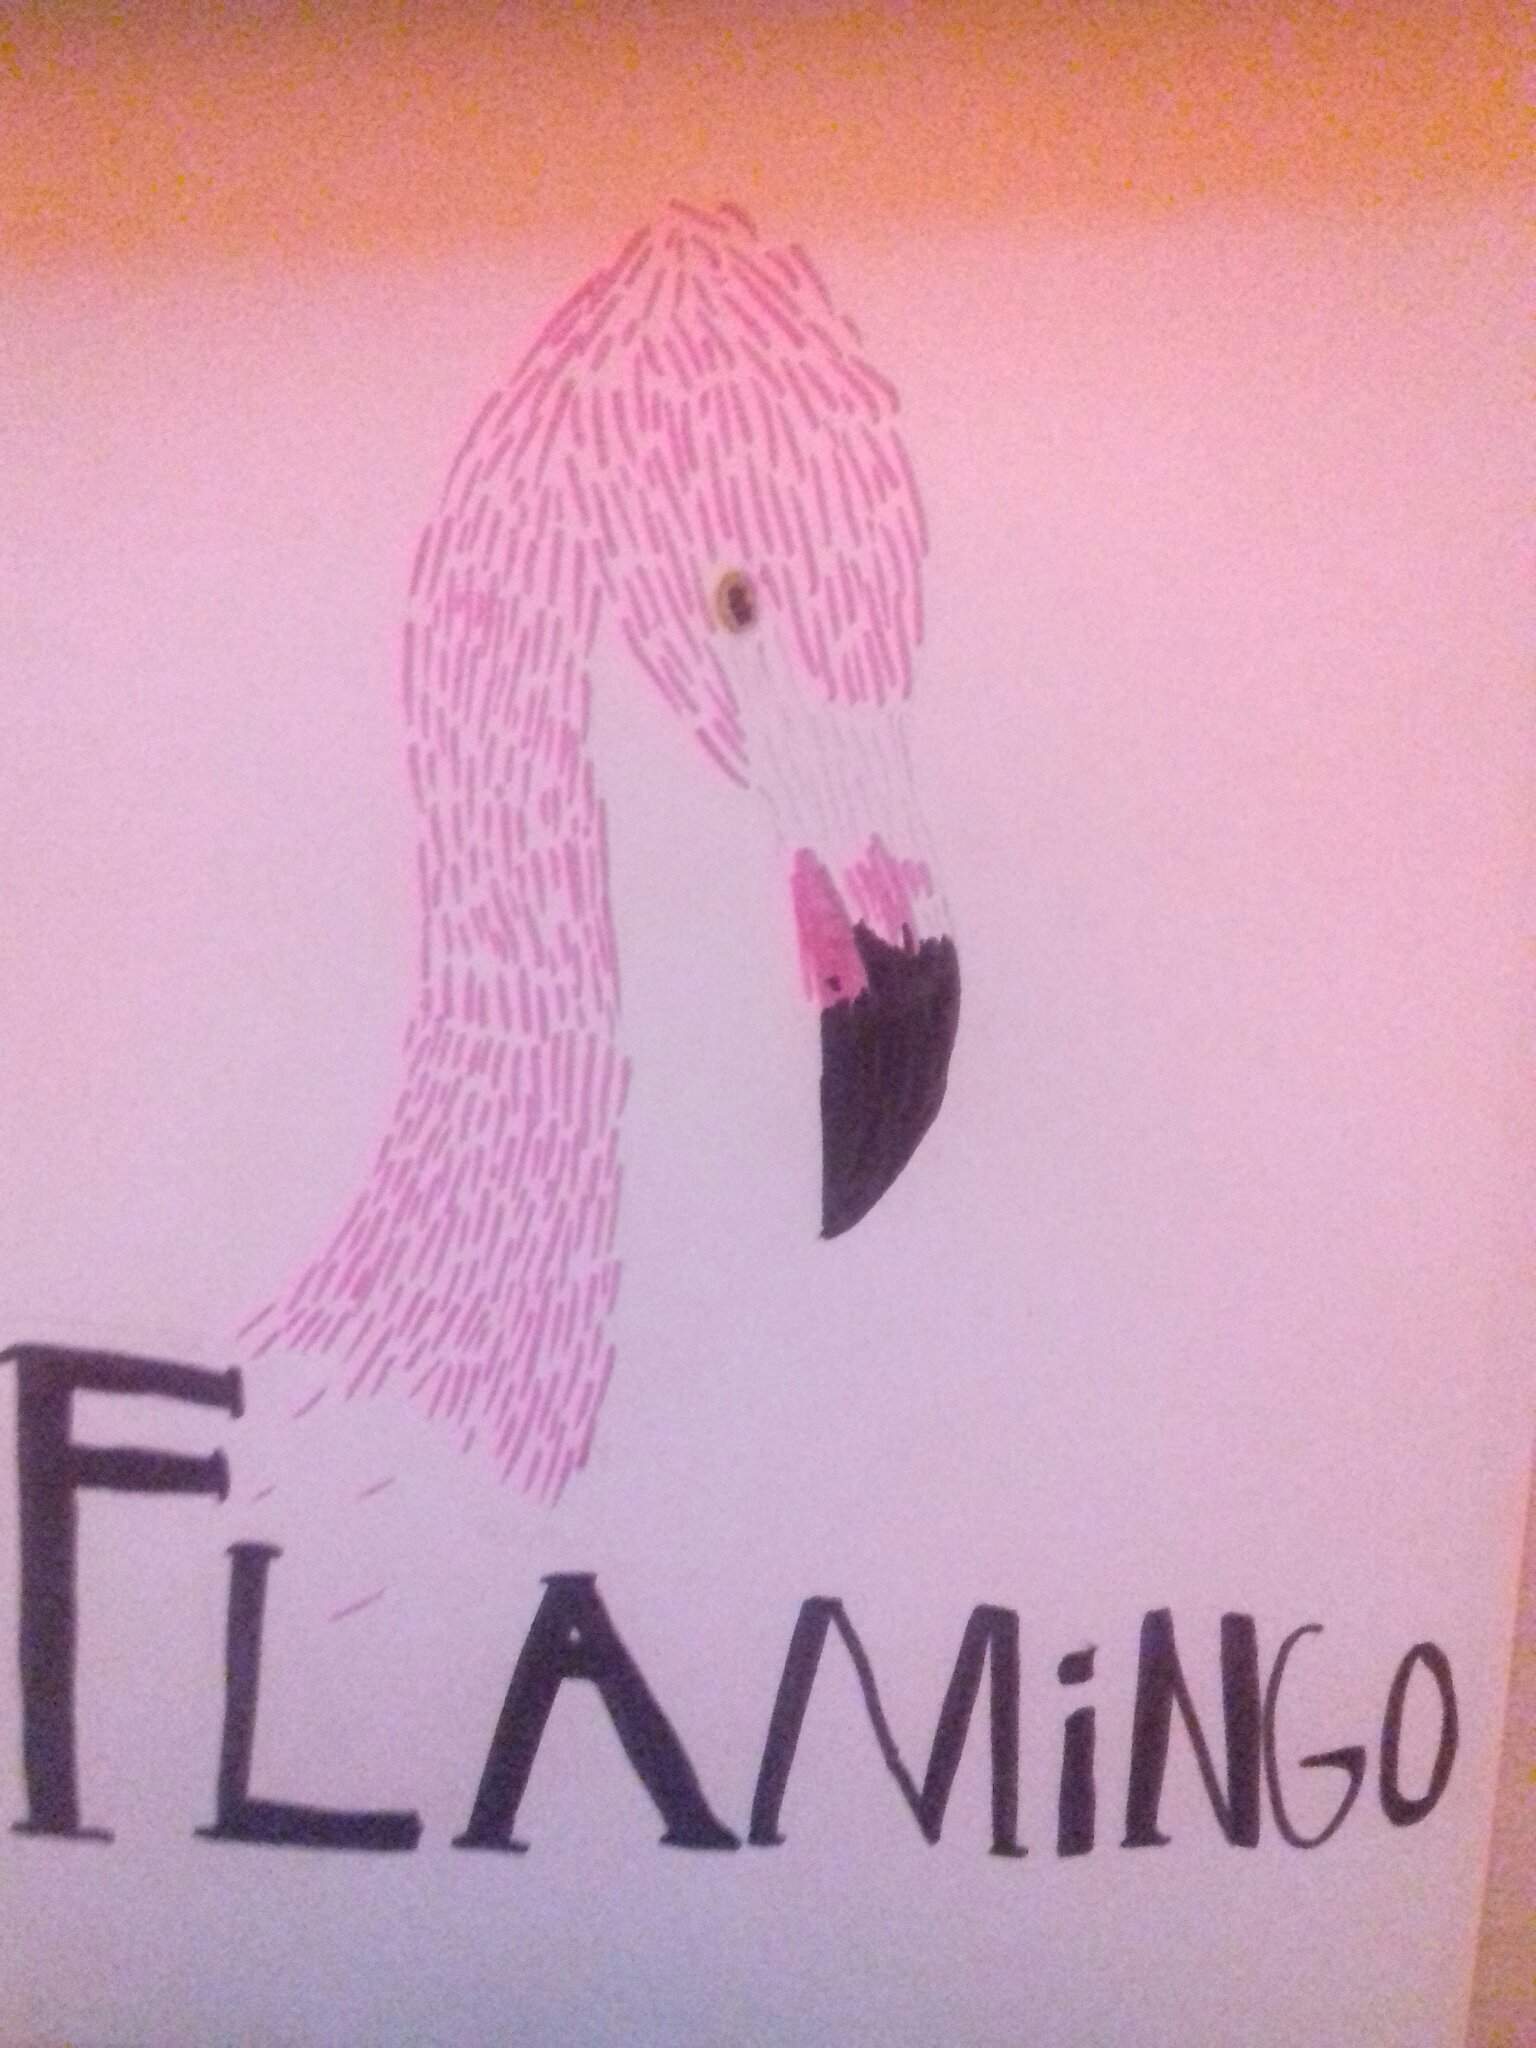 More flamingo fanart AlbertsStuff Amino.